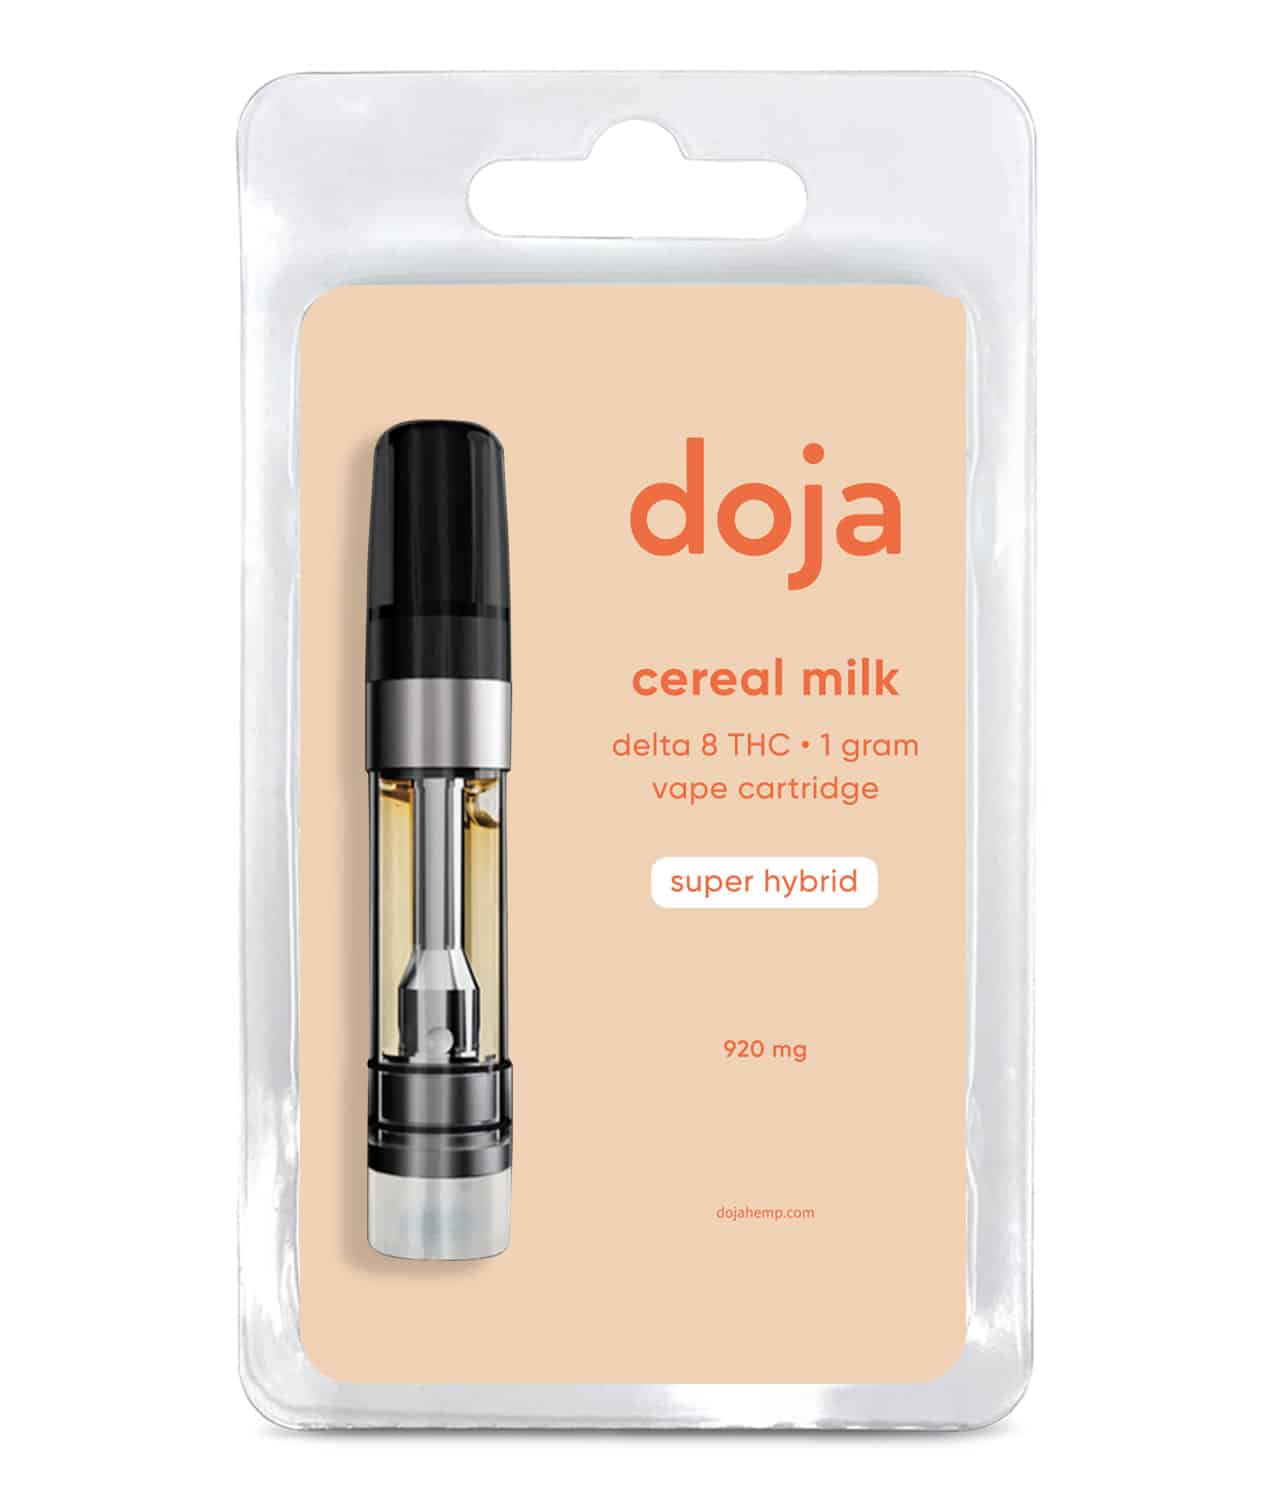 doja hemp cereal milk delta 8 vape cartridge hybrid 2022